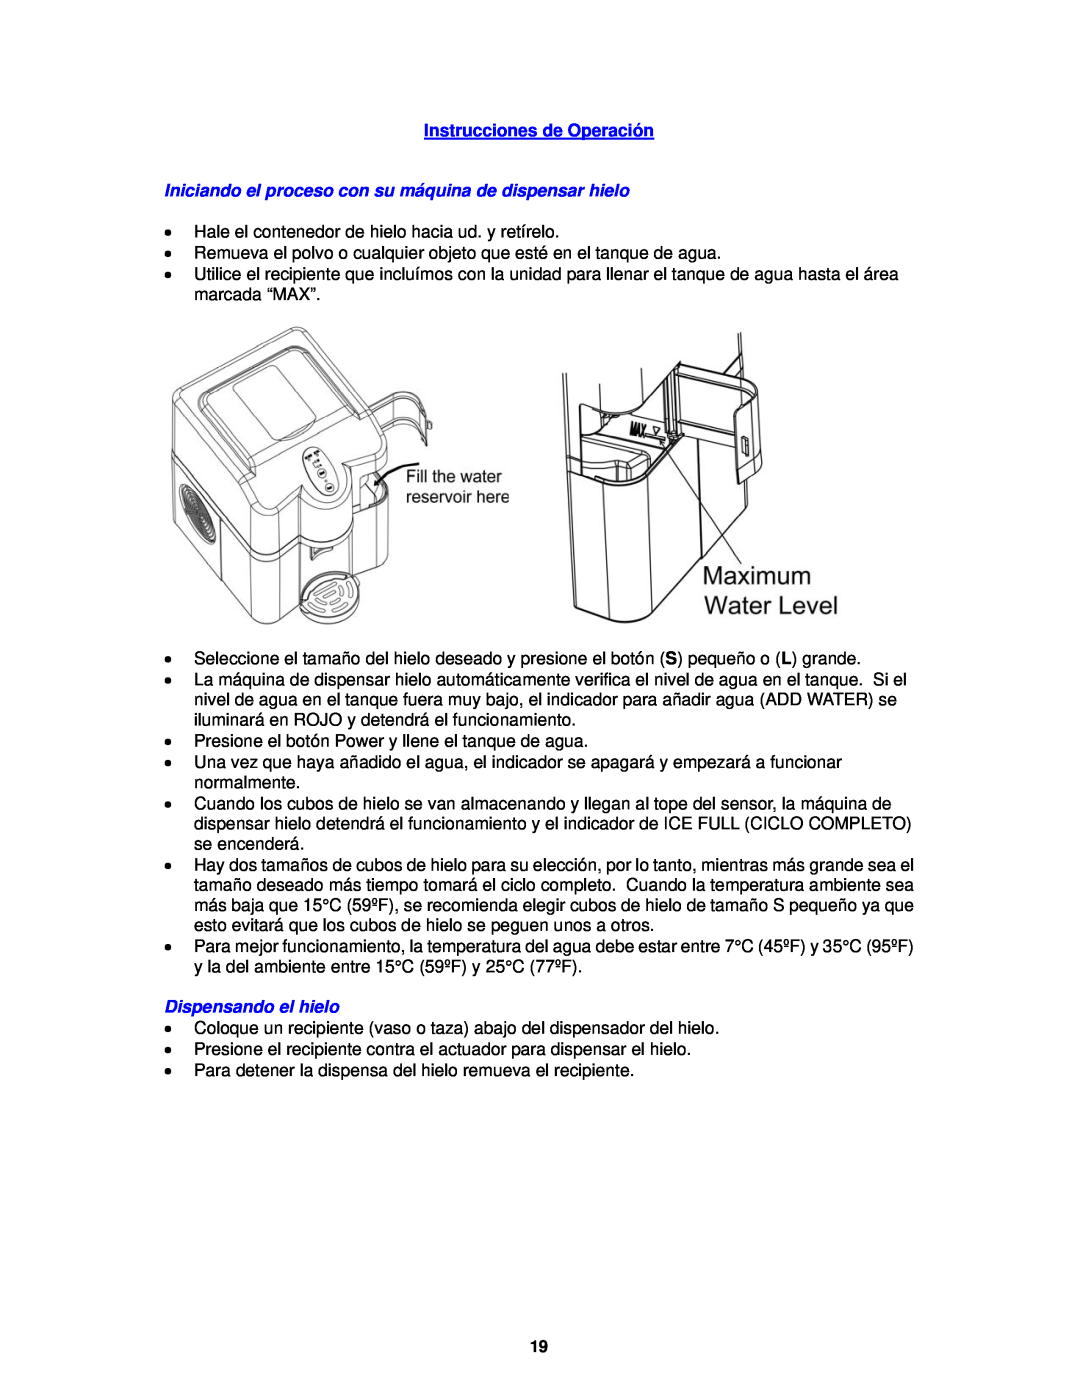 Avanti IMD250 instruction manual Instrucciones de Operación, Dispensando el hielo 